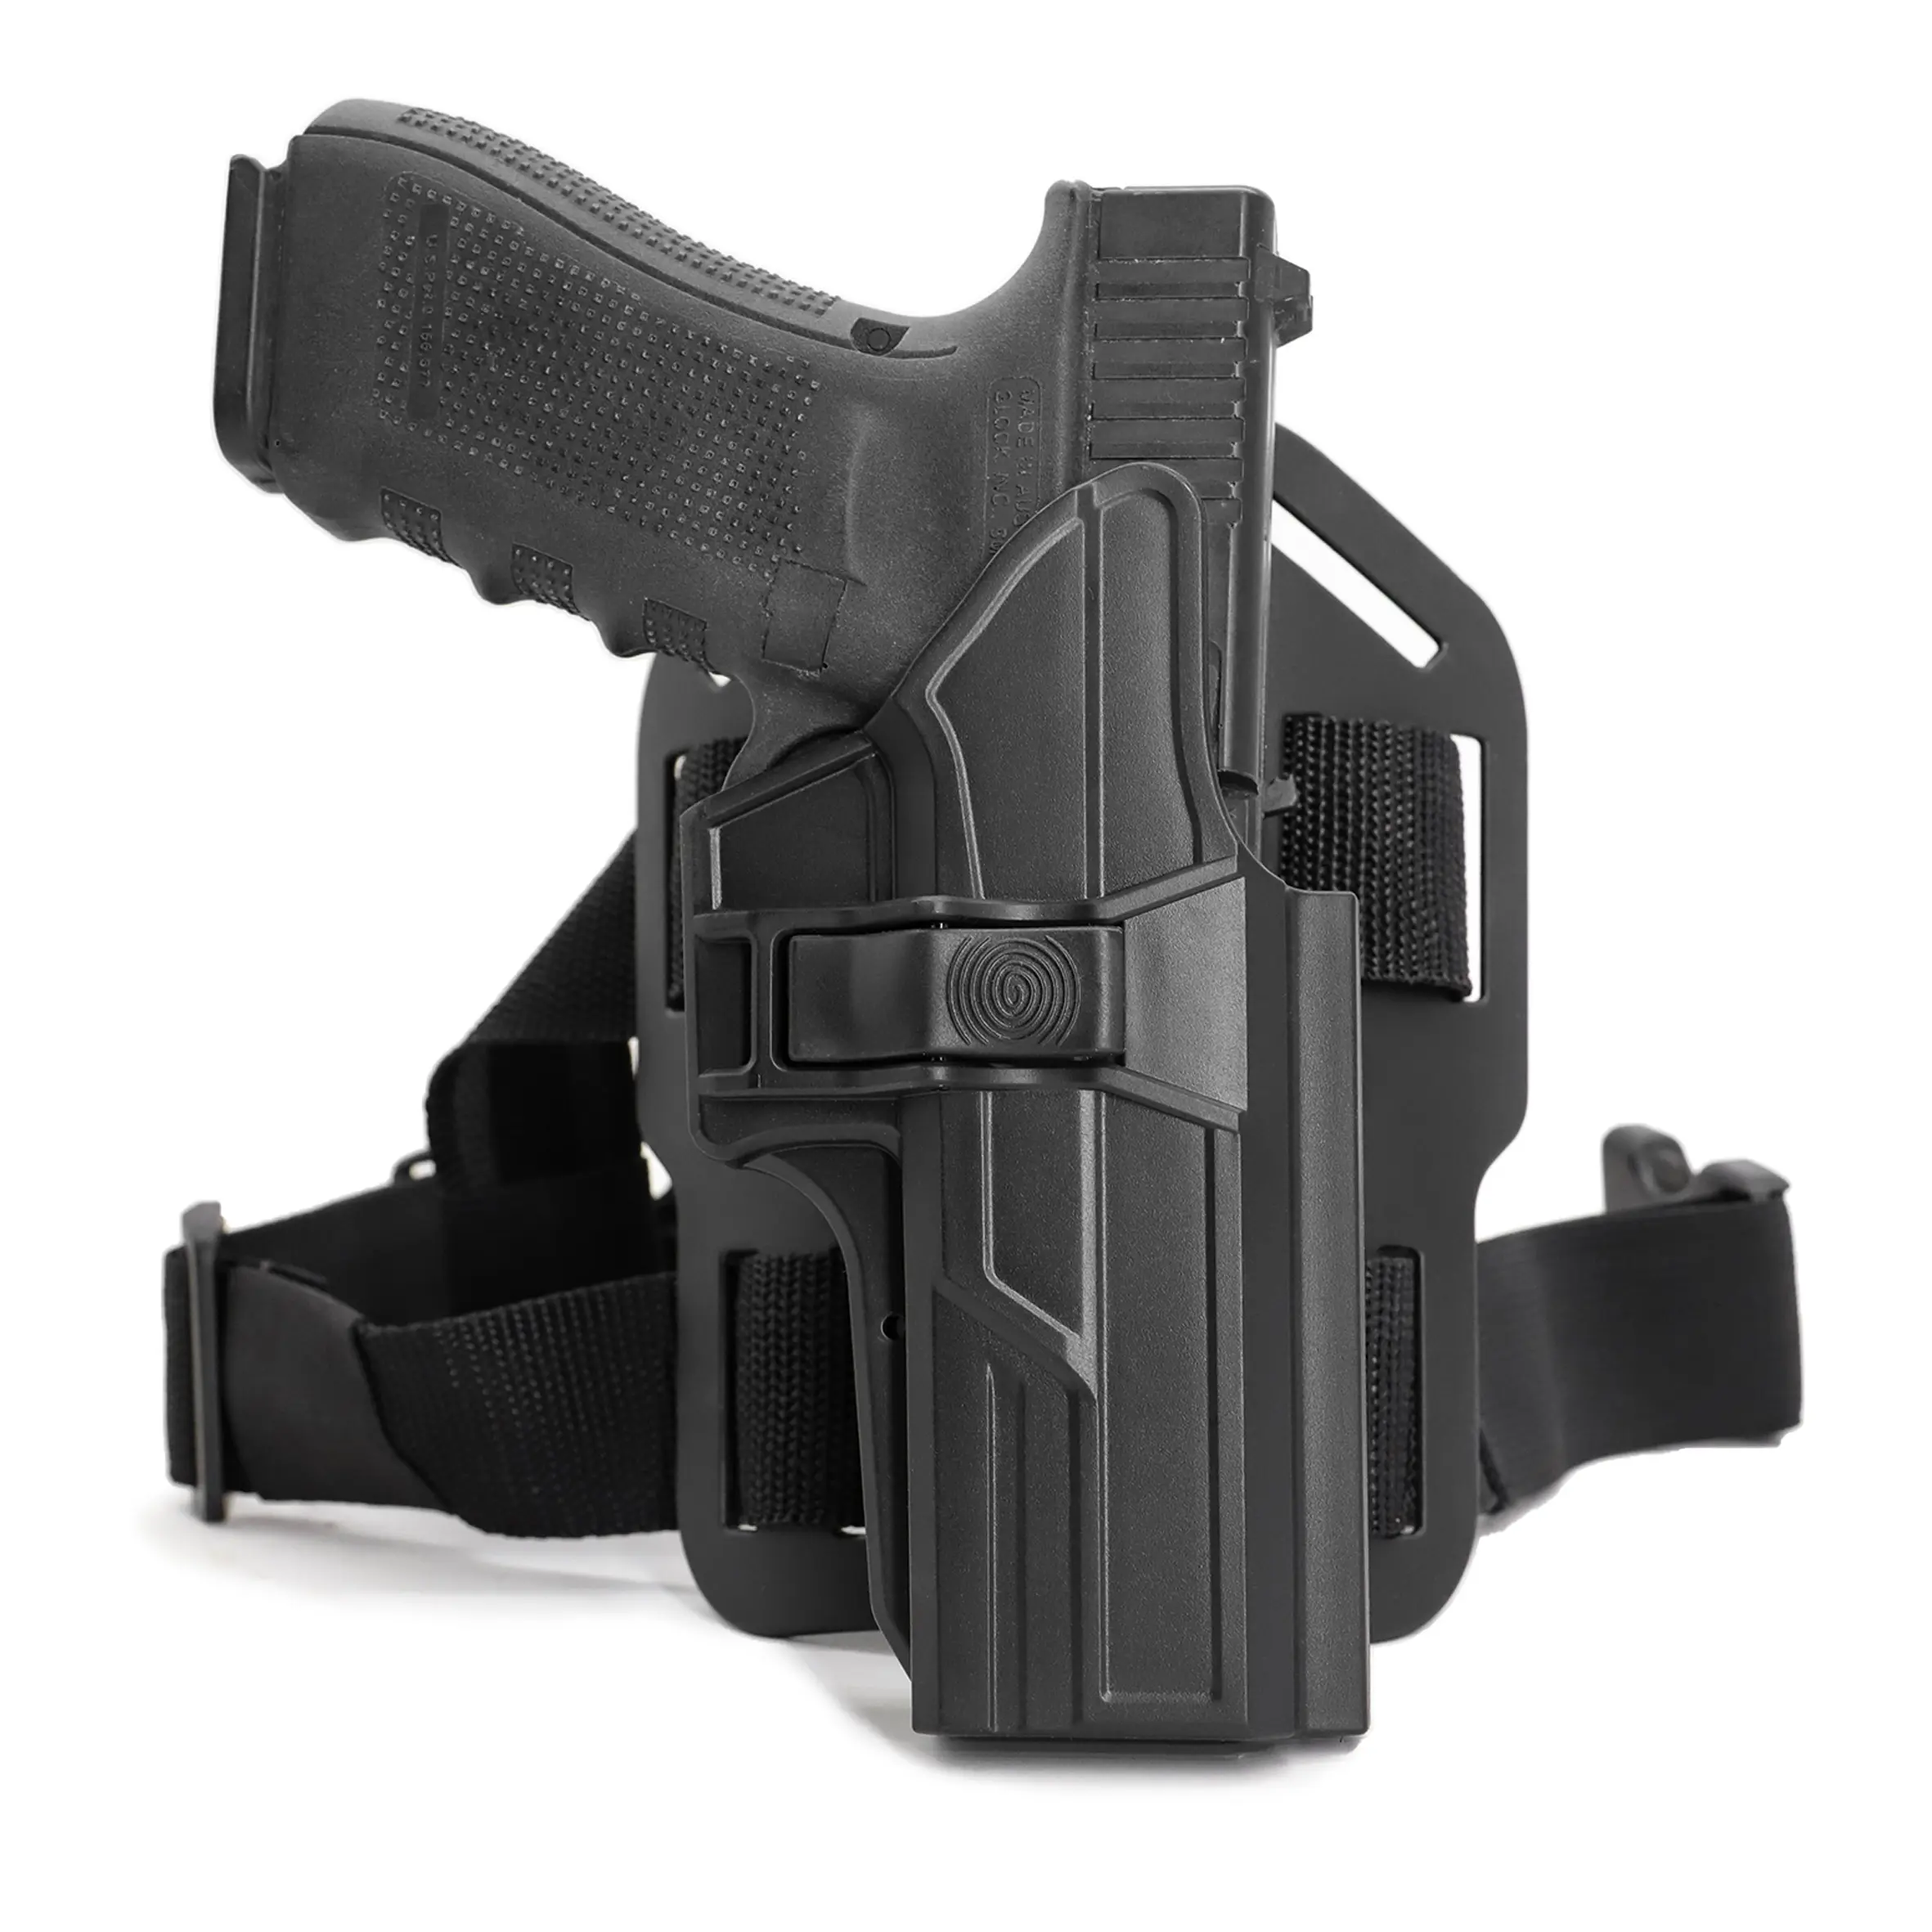 TEGE USA Hot Selling Hochwertiges Pistolen holster für Glock17/22/31 Gen1-5 mit Drop-Leg Attachment Leg Holster